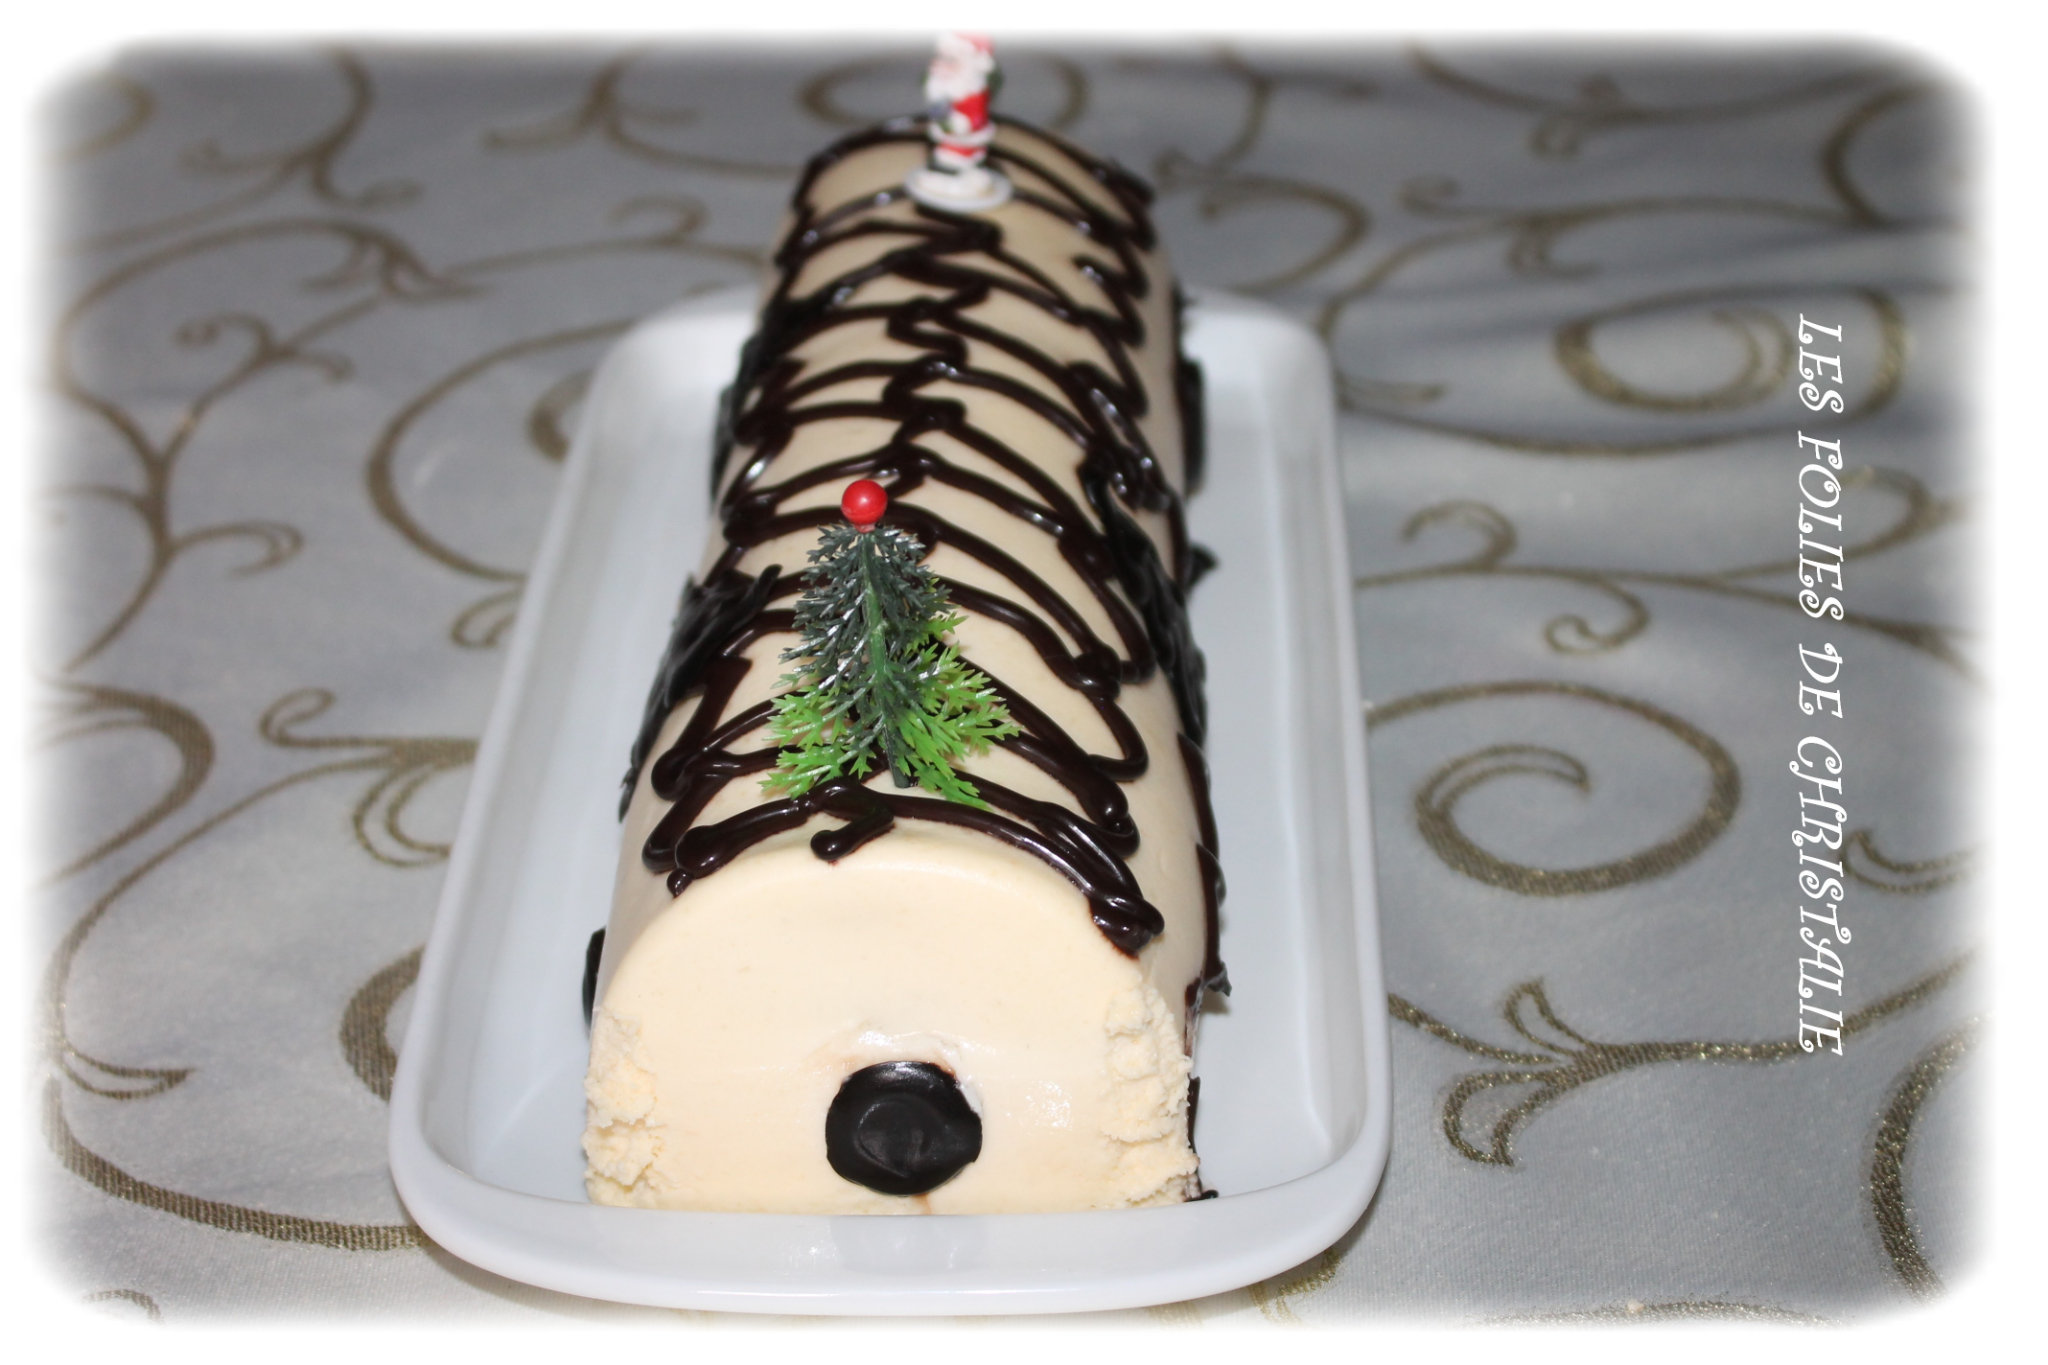 Bûche de Noël passion, poire, chocolat blanc - La recette